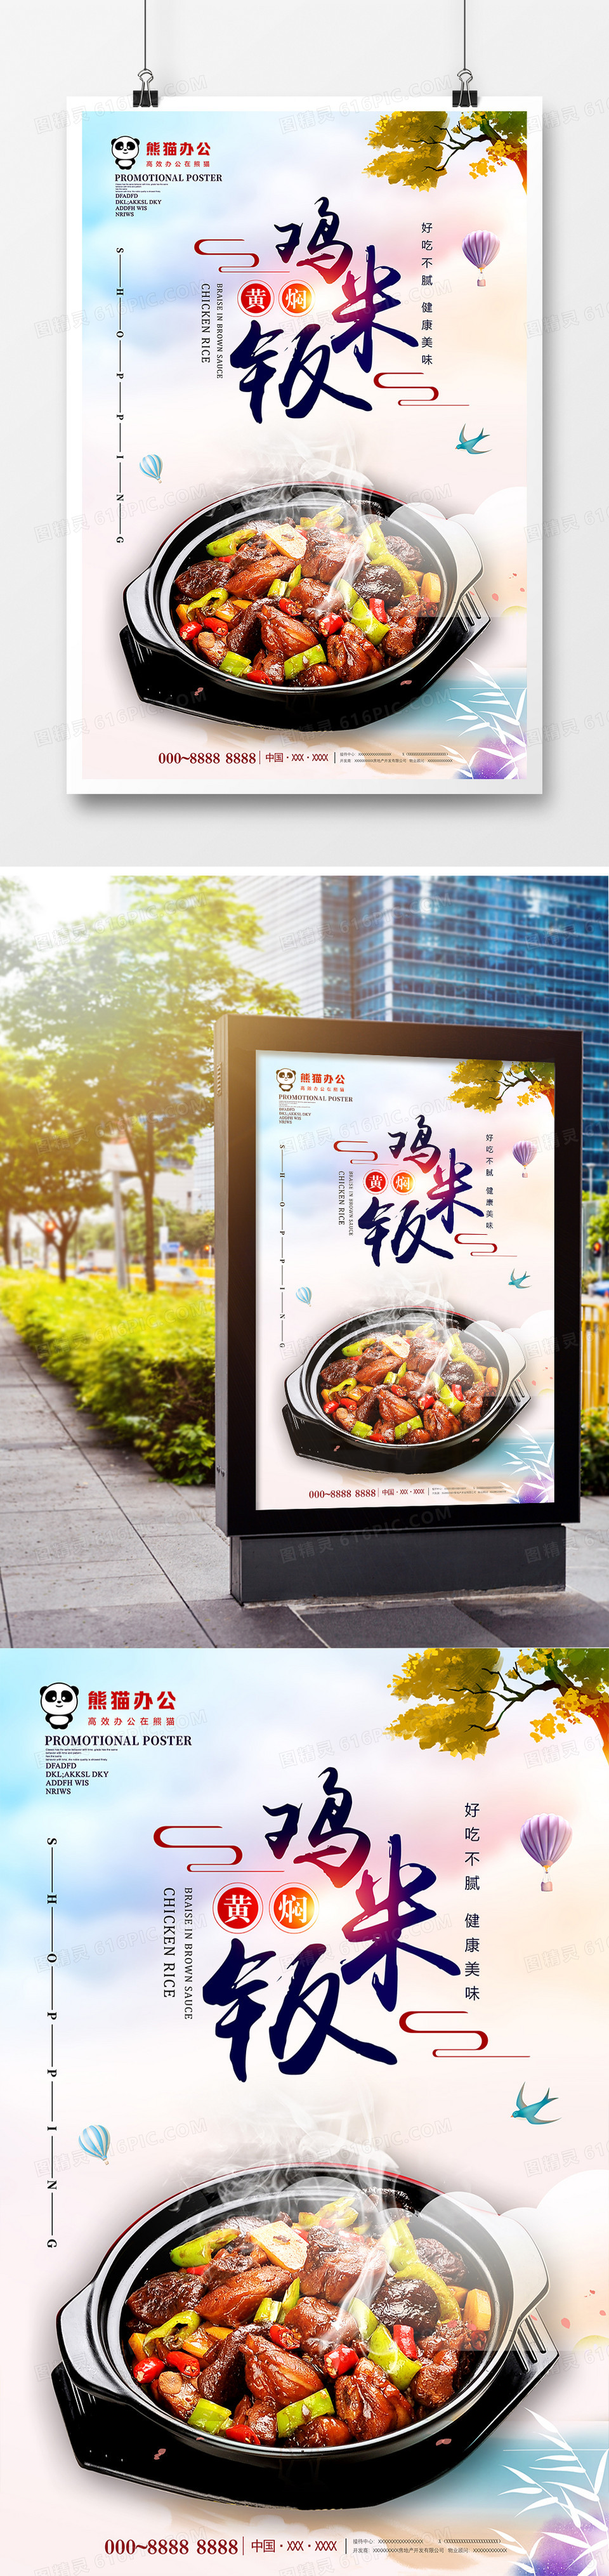 简约小清新黄焖鸡米饭美食海报设计